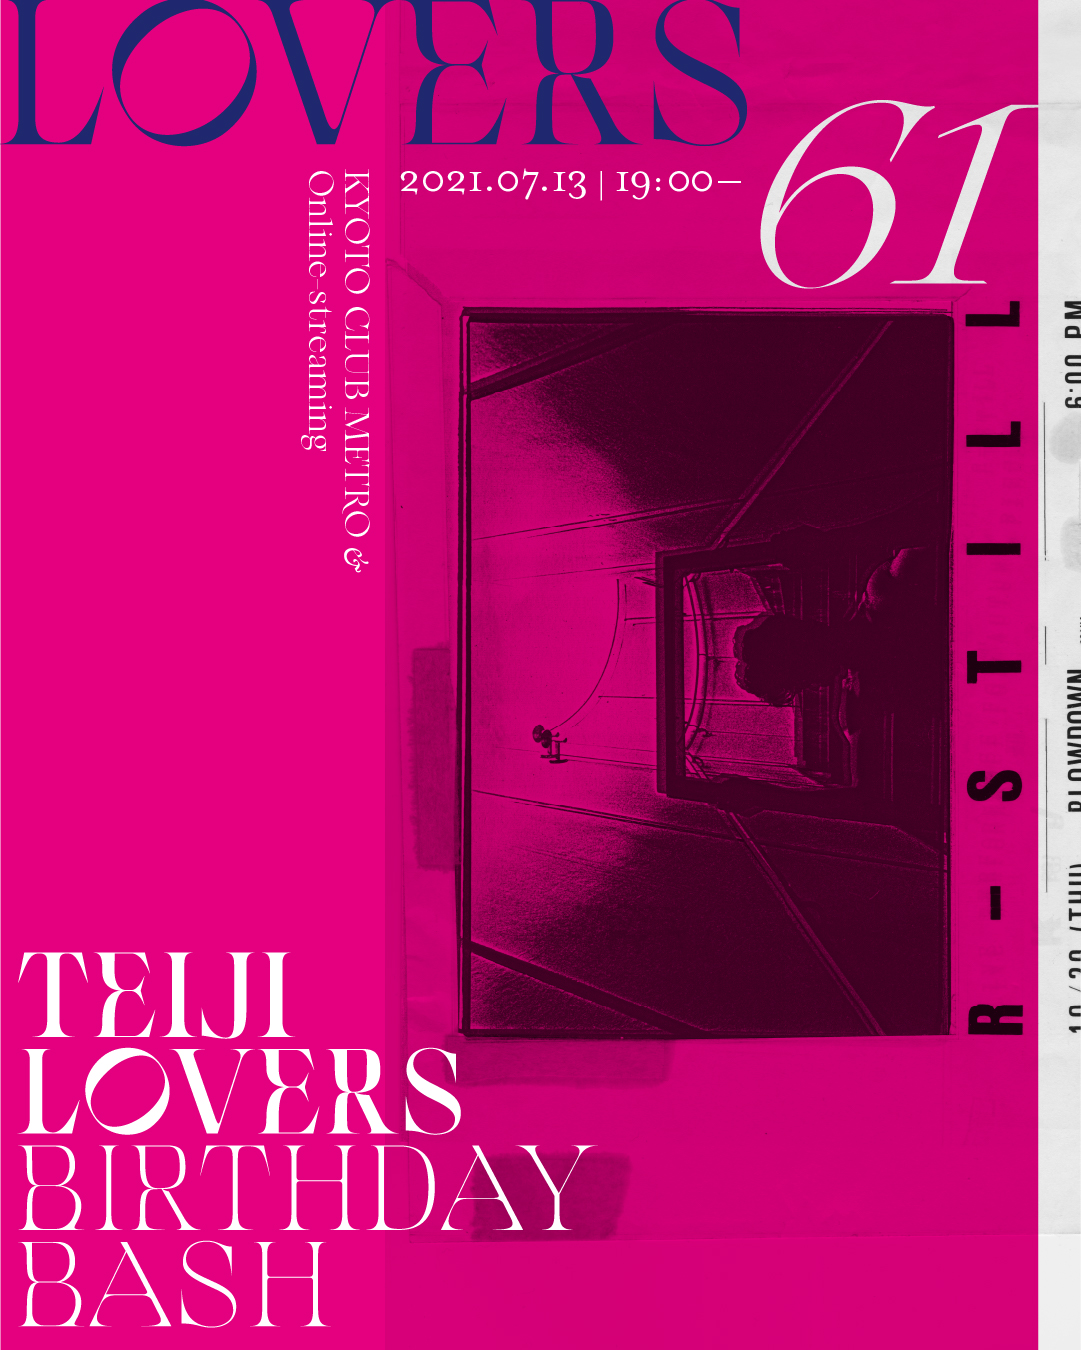 開催時間変更 Lovers 61 Teiji Lovers Birthday Bash Club Metro 京都メトロ